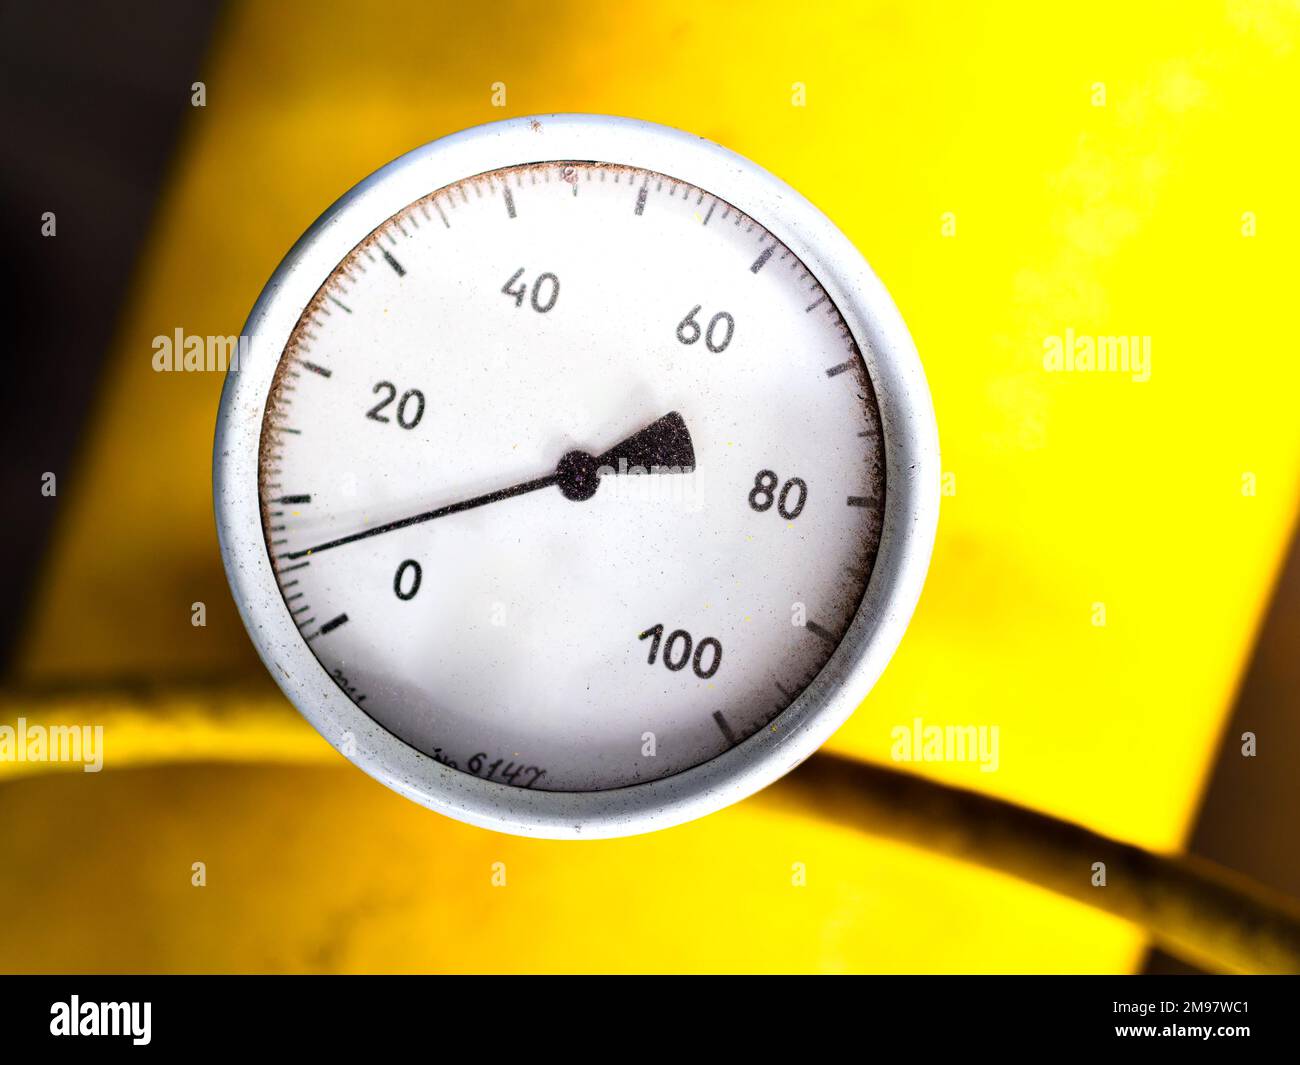 Betriebsfähiges Manometer zur Messung des Wasserdrucks in der Heizung  Stockfotografie - Alamy